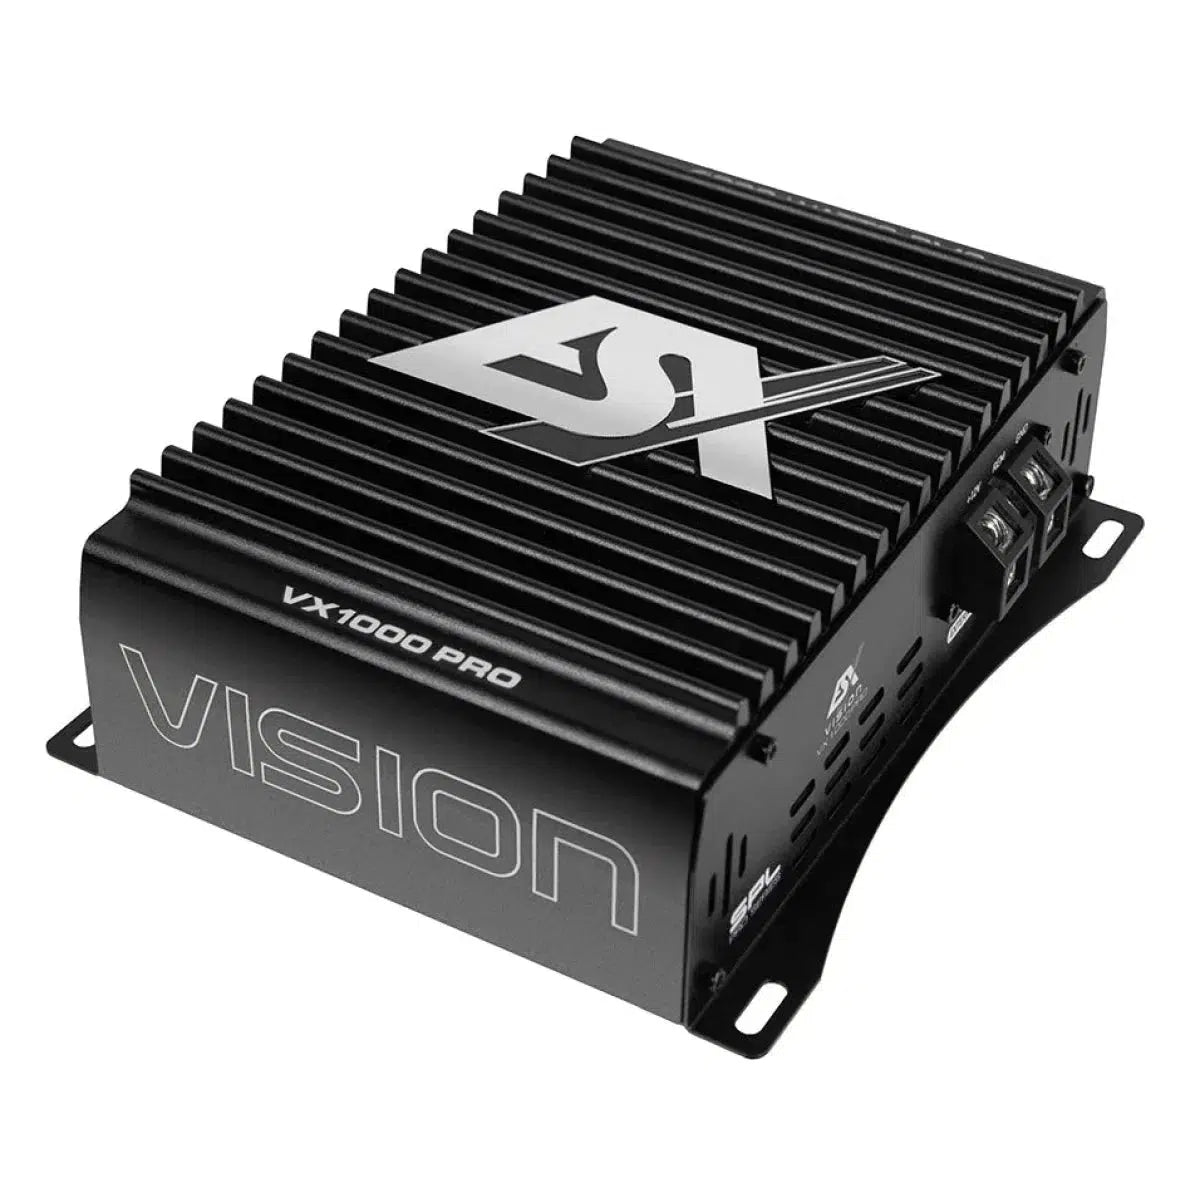 ESX-Vision VX1000 PRO-1-canal Amplificateur-Masori.fr